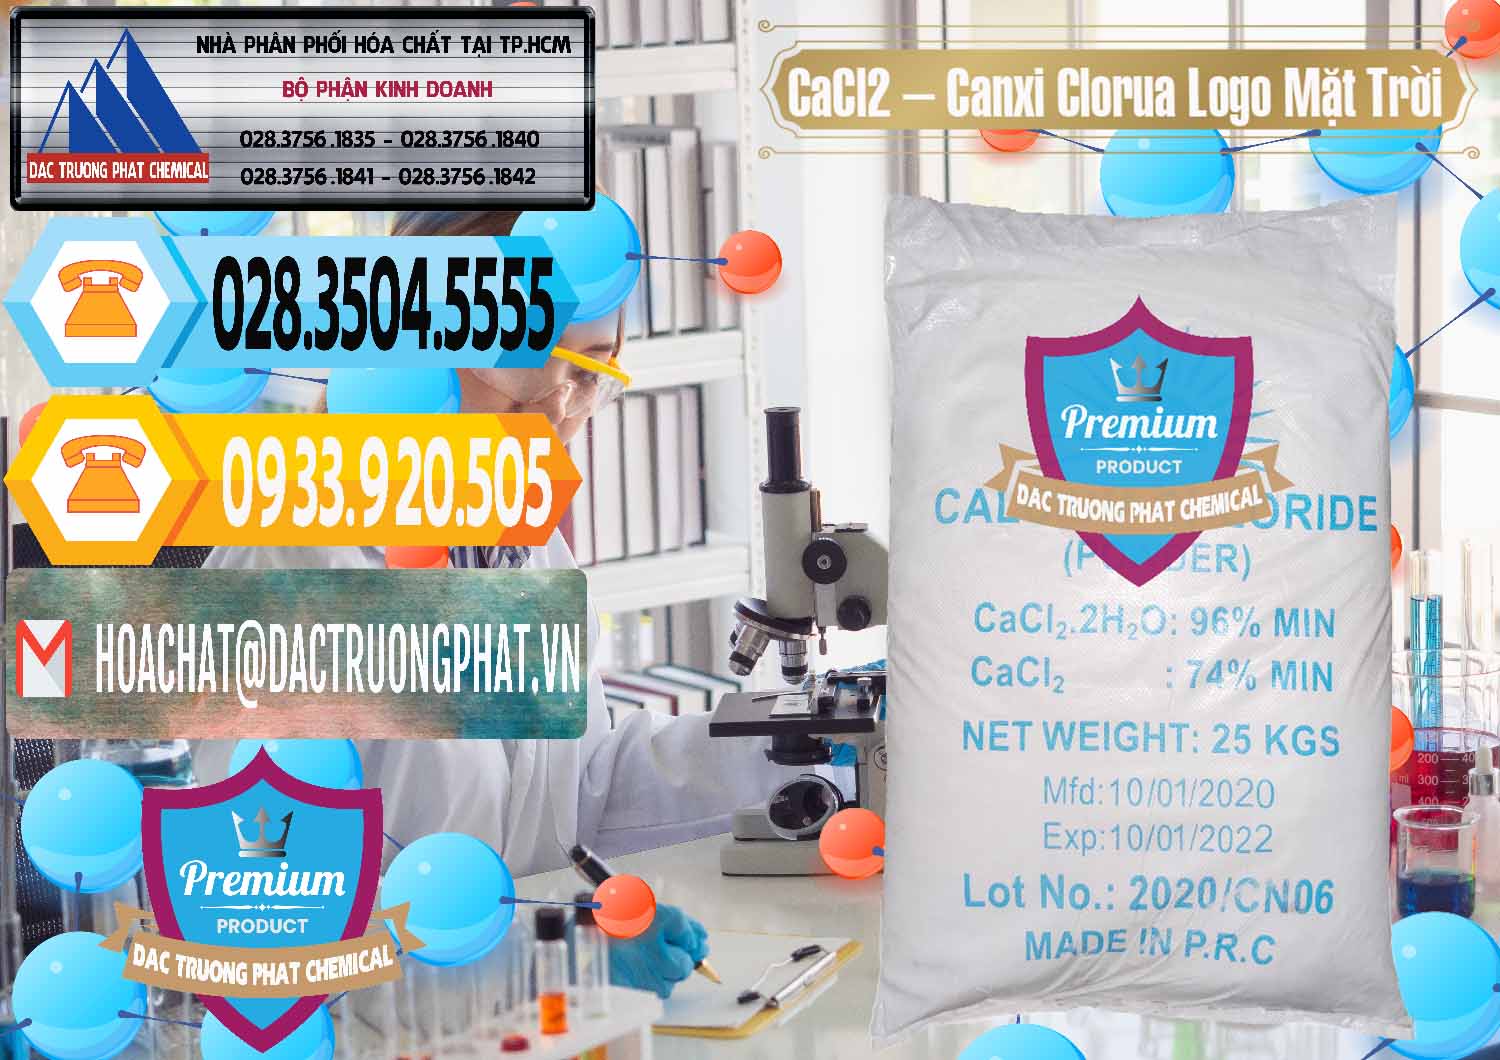 Cty bán & phân phối CaCl2 – Canxi Clorua 96% Logo Mặt Trời Trung Quốc China - 0041 - Đơn vị cung cấp ( kinh doanh ) hóa chất tại TP.HCM - hoachattayrua.net